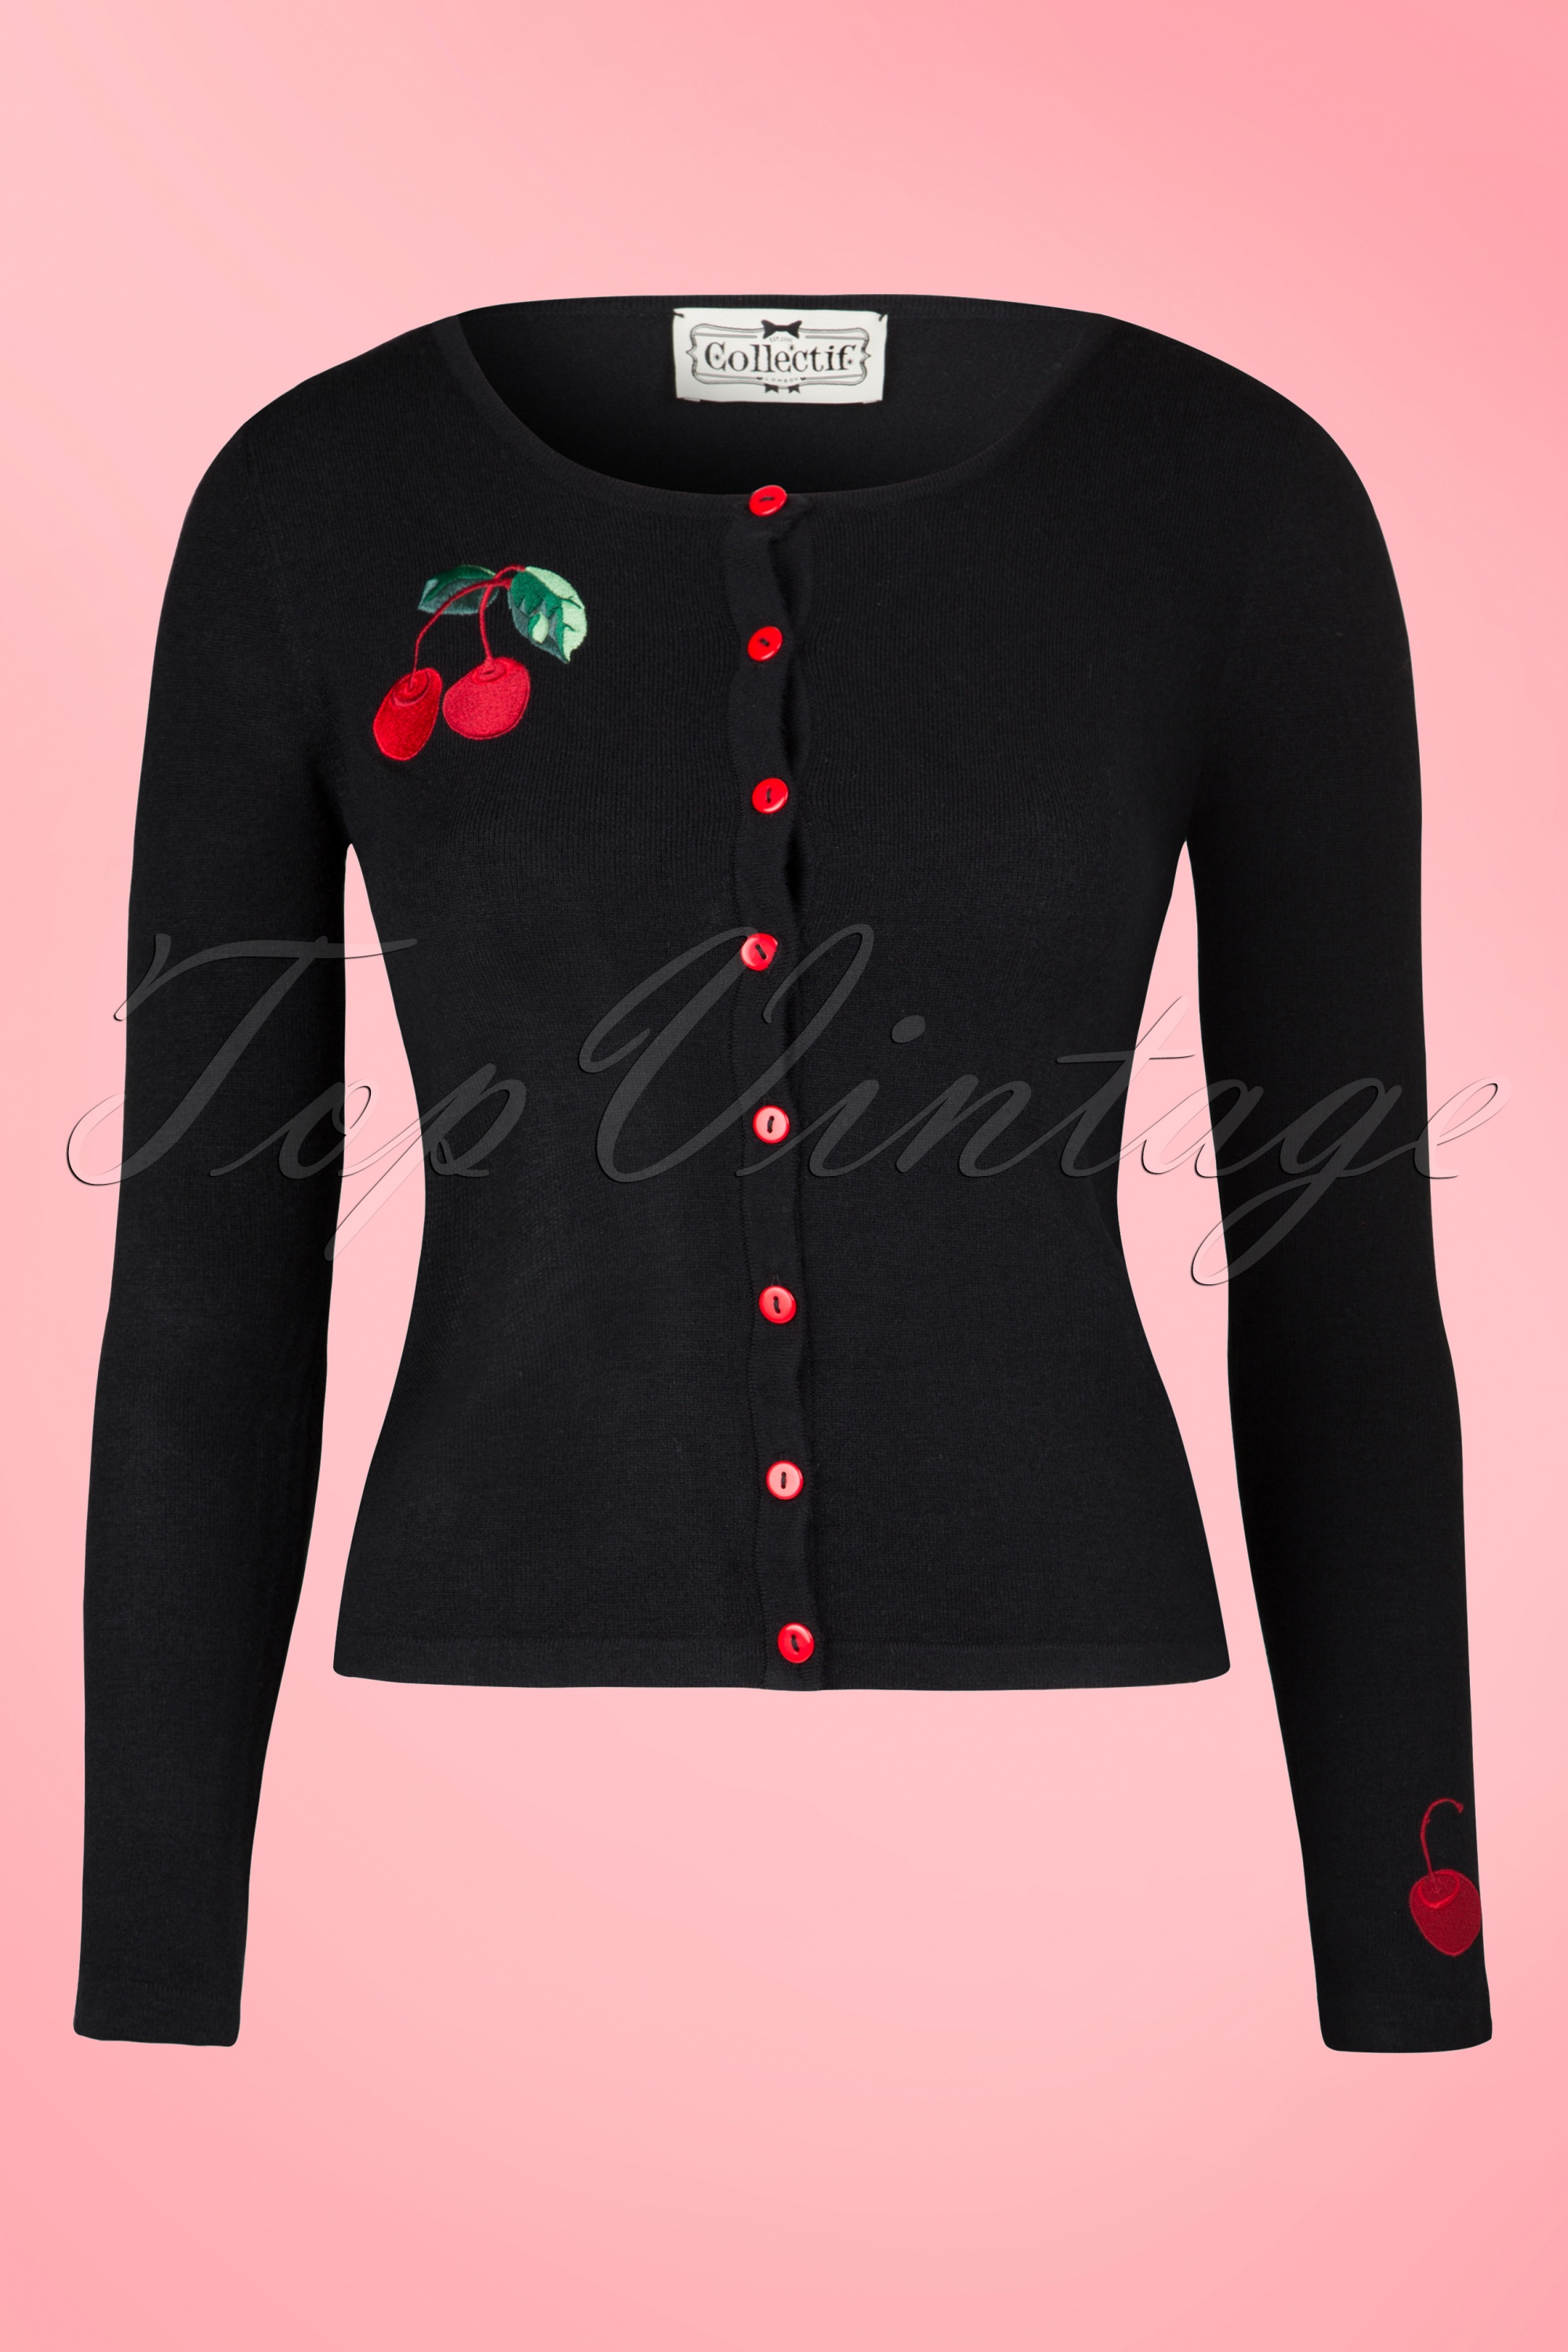 Collectif Clothing - Jo Cherry vest in zwart